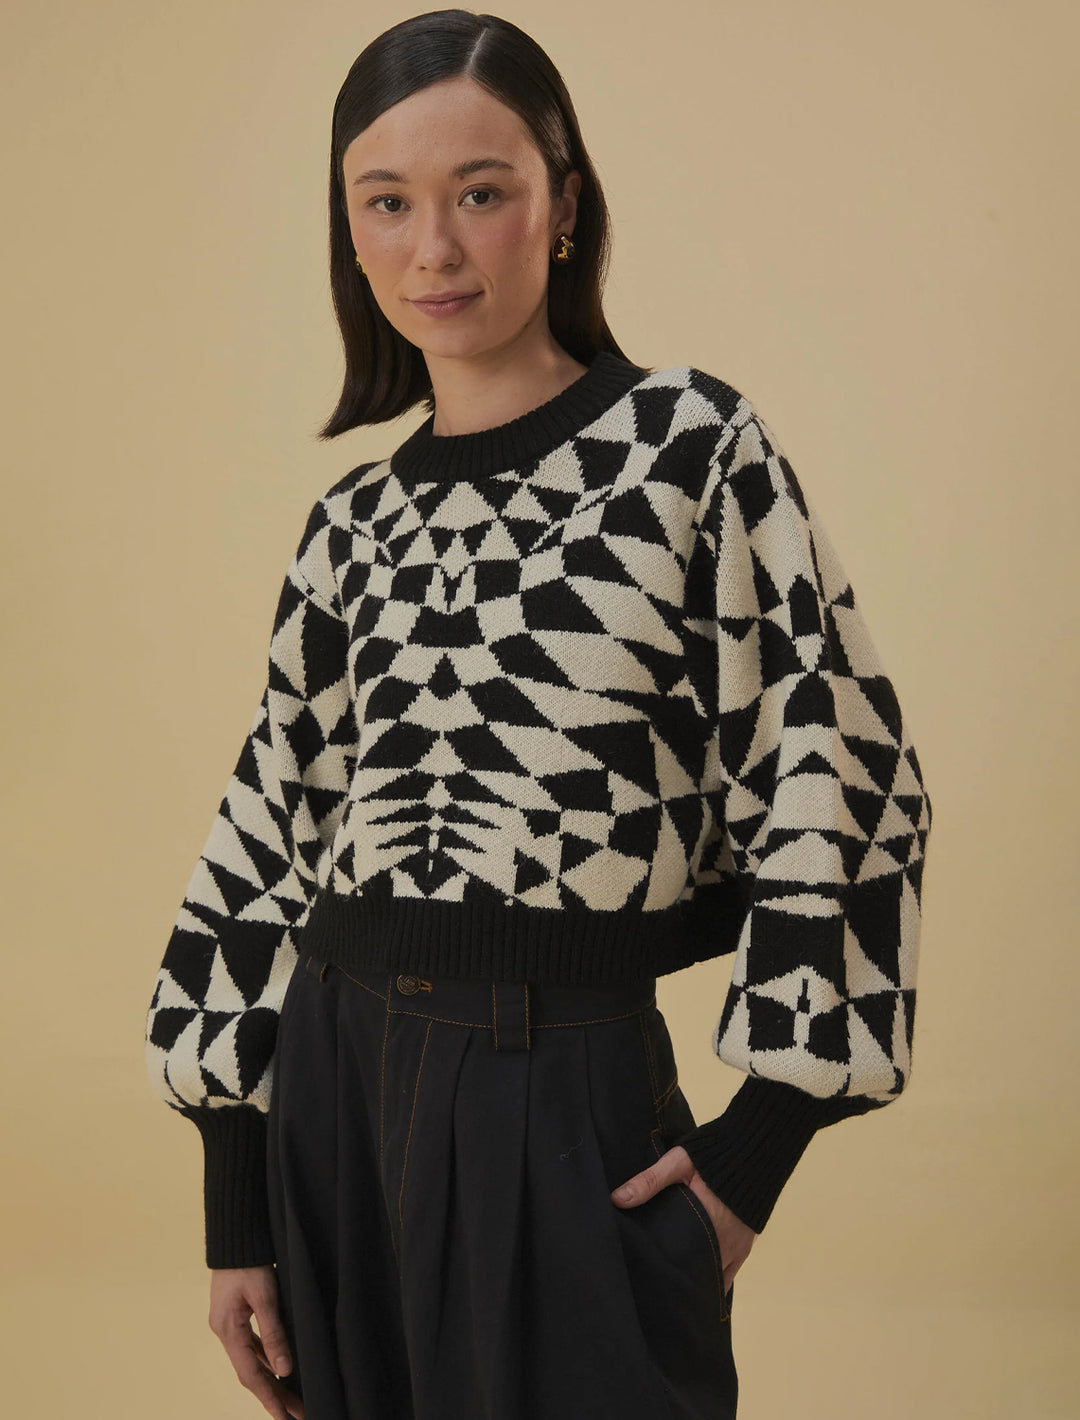 Model wearing FARM Rio's heart deco black knit sweater.